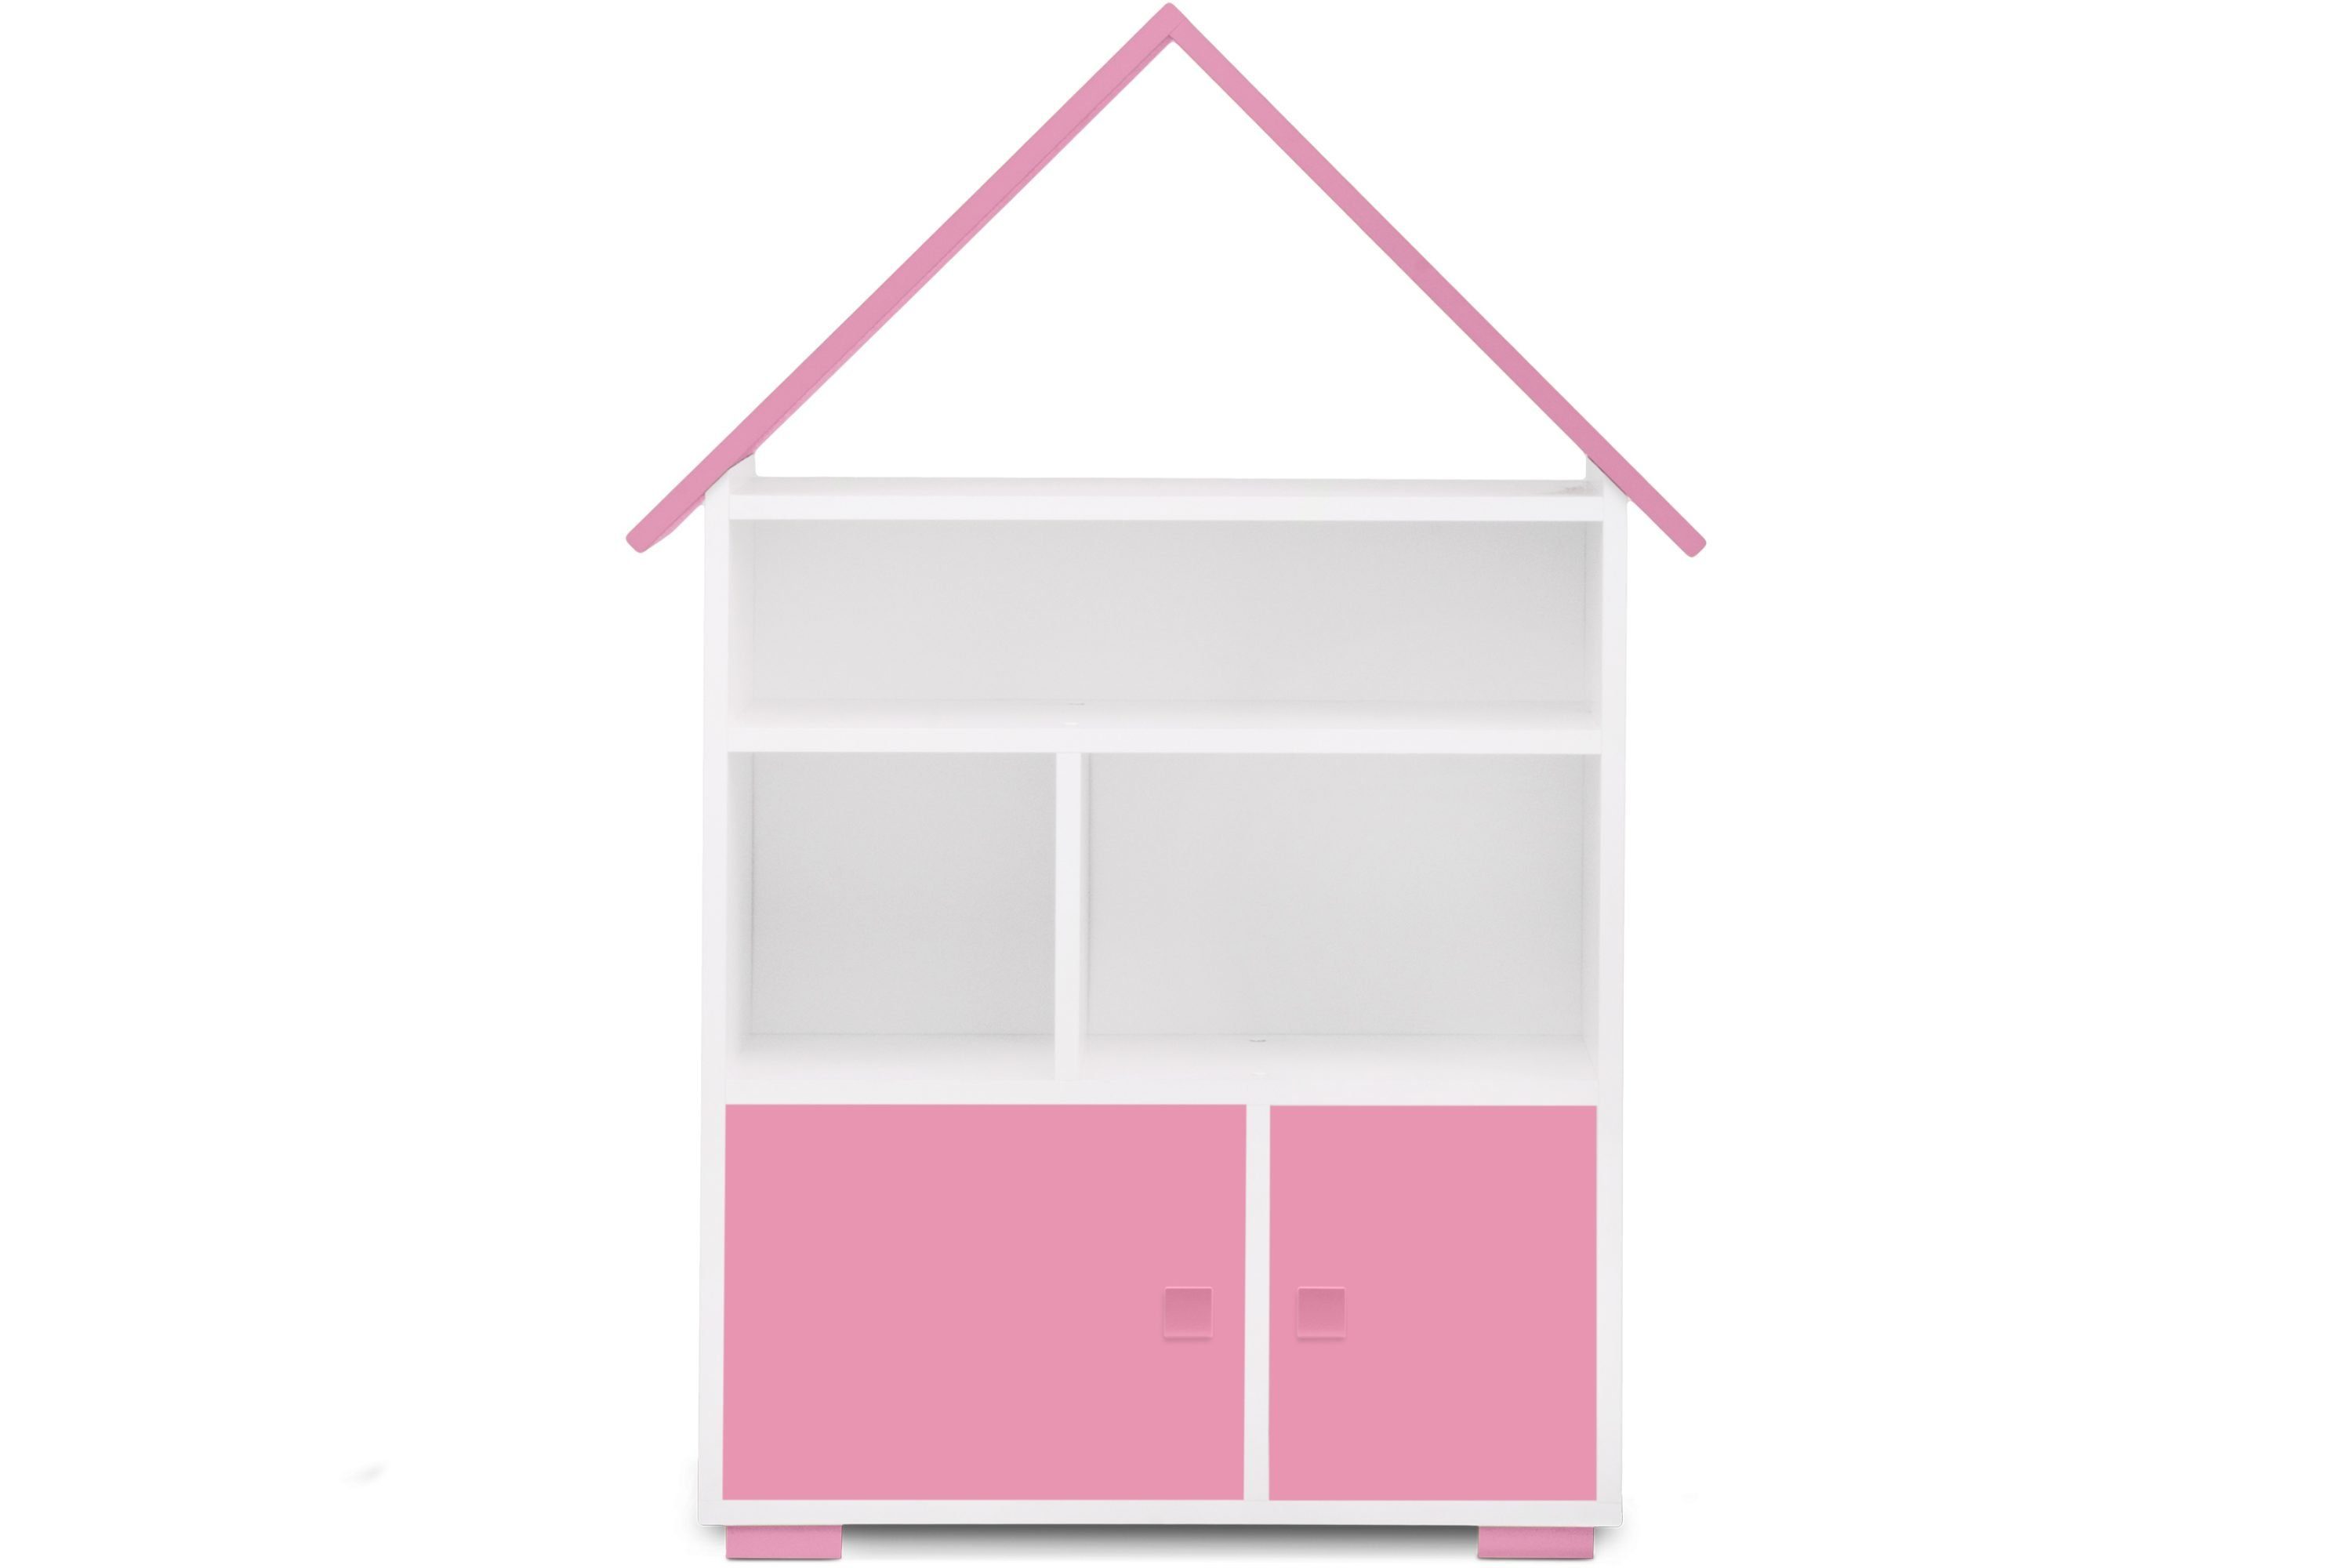 Kinderregal mit mit Hausform, Bücherregal weiß/rosa in Tür, Konsimo Pastellfarben PABIS, Bücherregal Türen